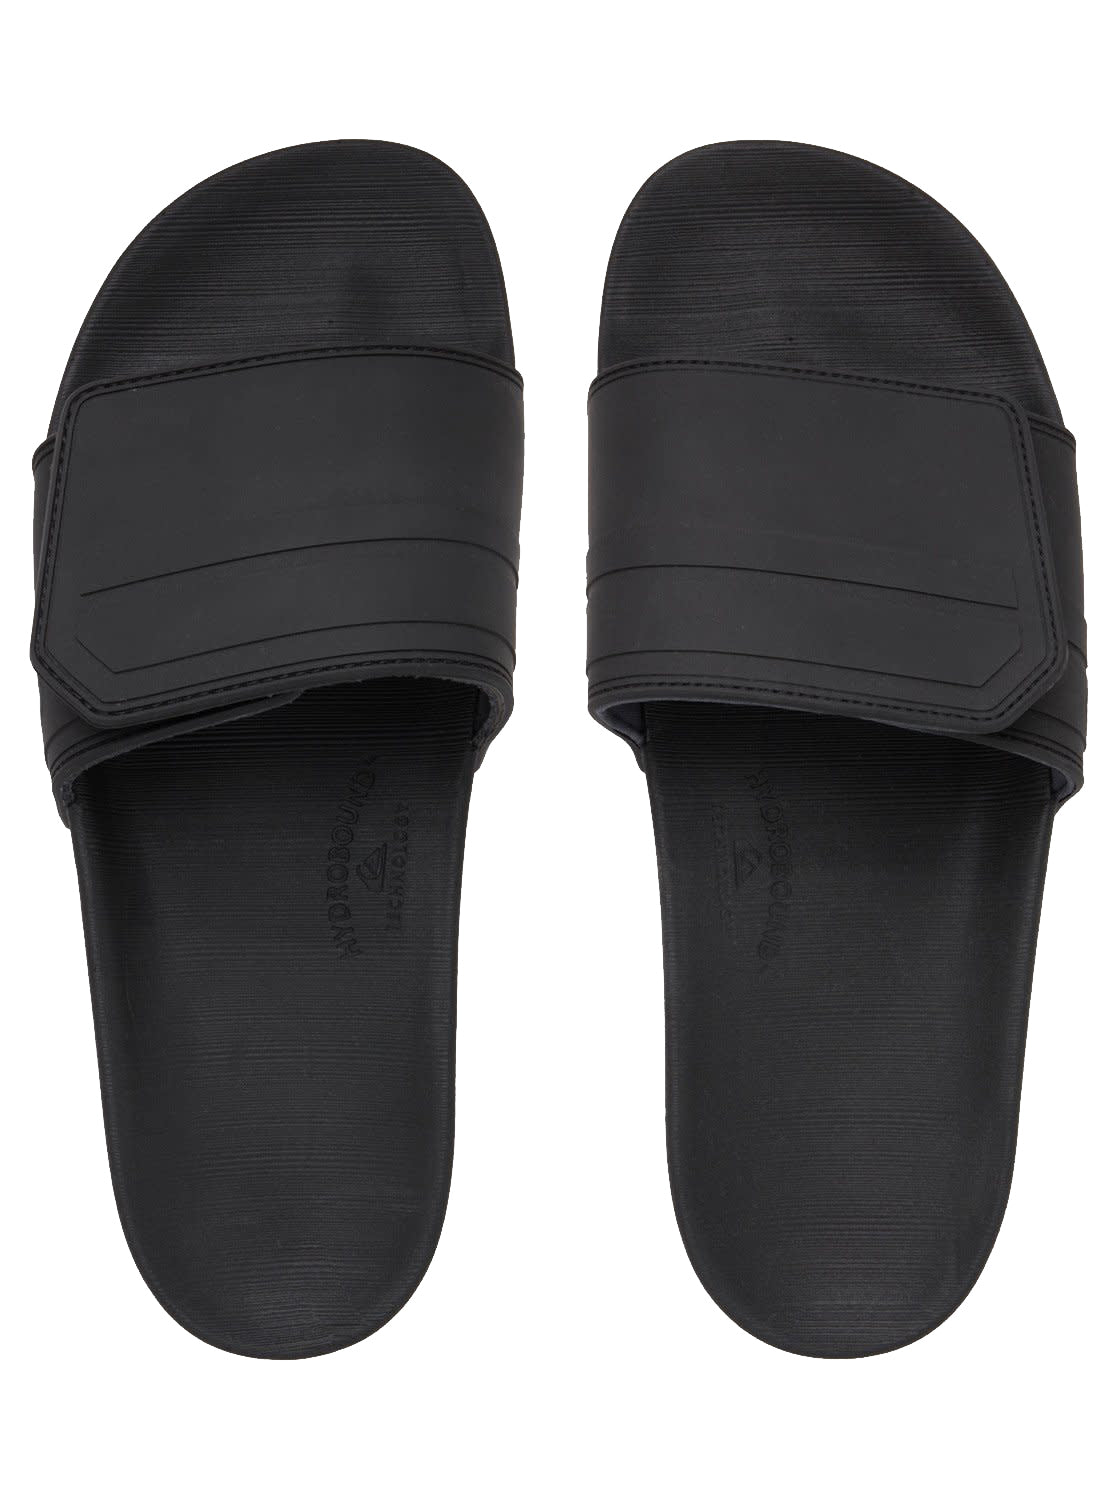 Quiksilver Rivi Slide Adjust Mens Sandal XKSK-Black-Grey-Black 10